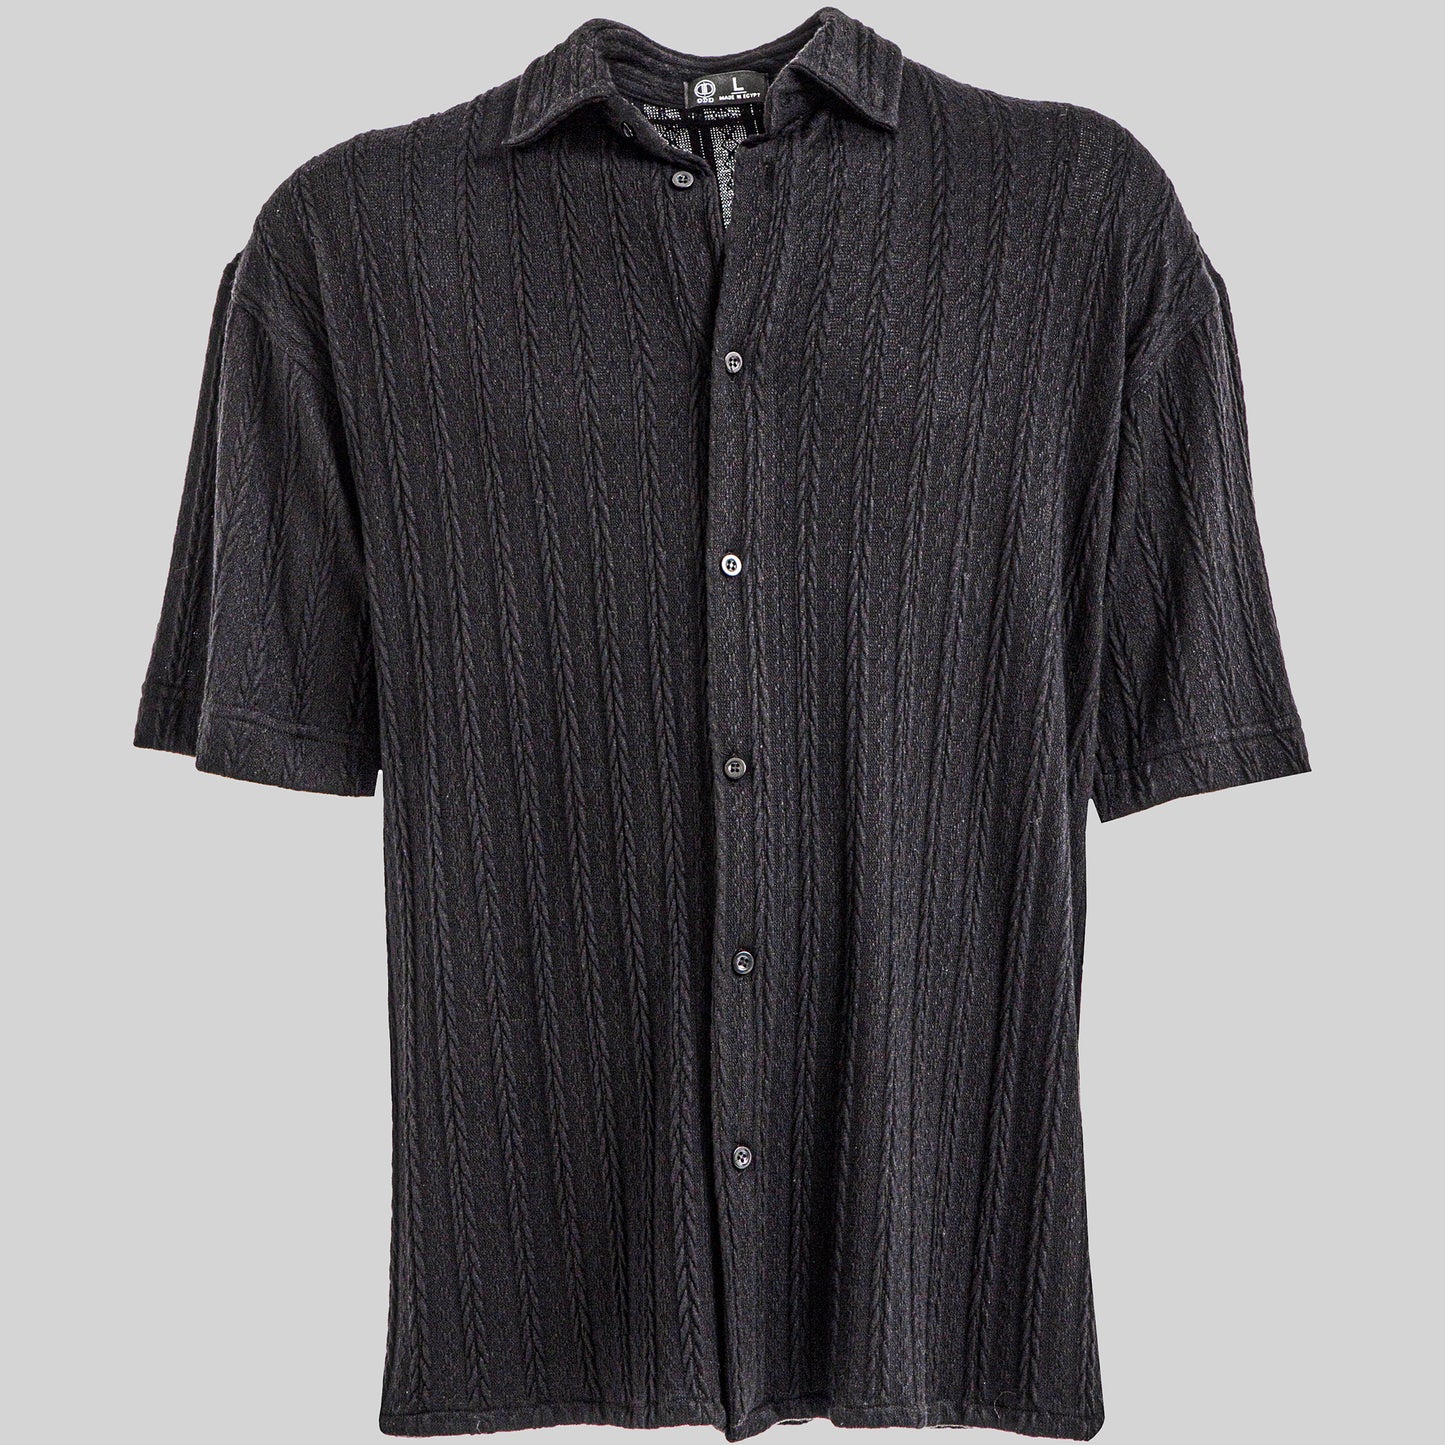 Black Knit Shirt